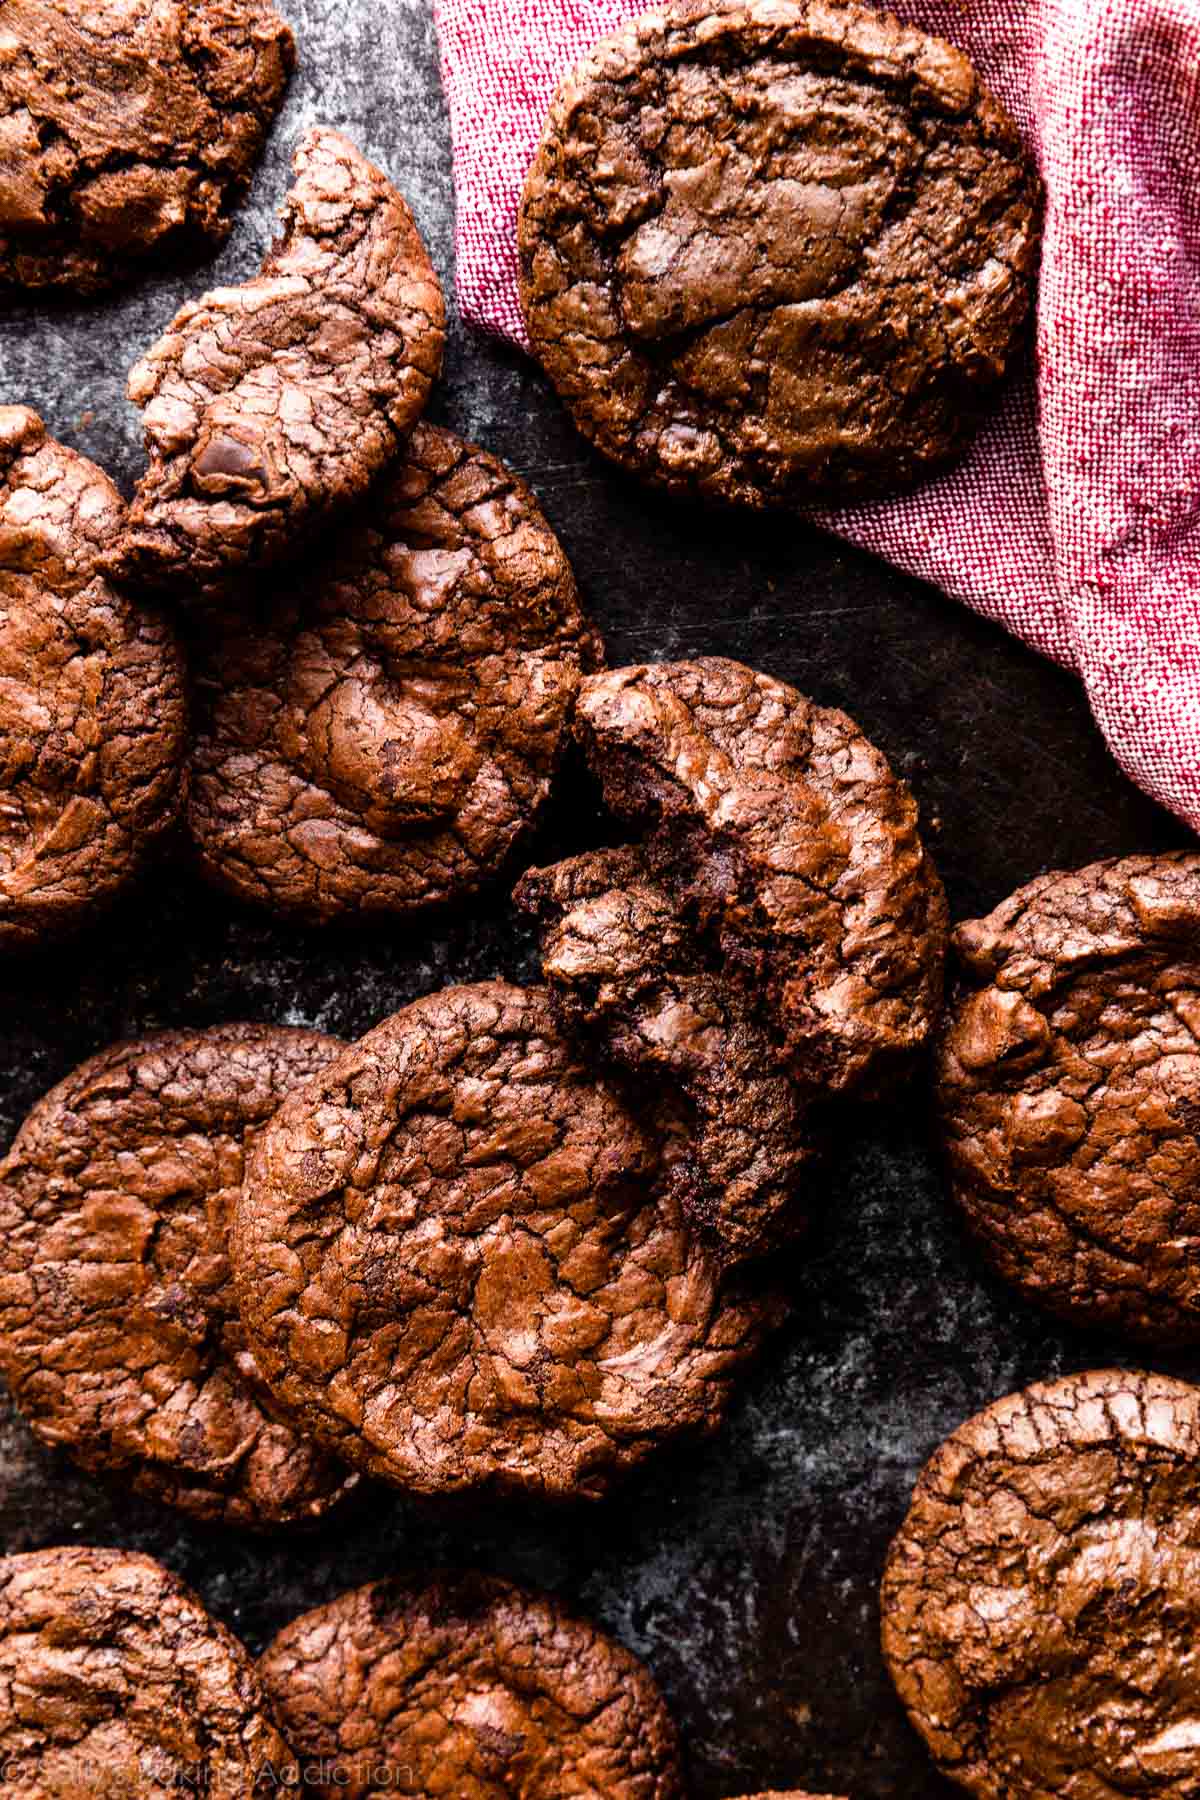 Photo prise à la verticale de biscuits brownie avec dessus froissé